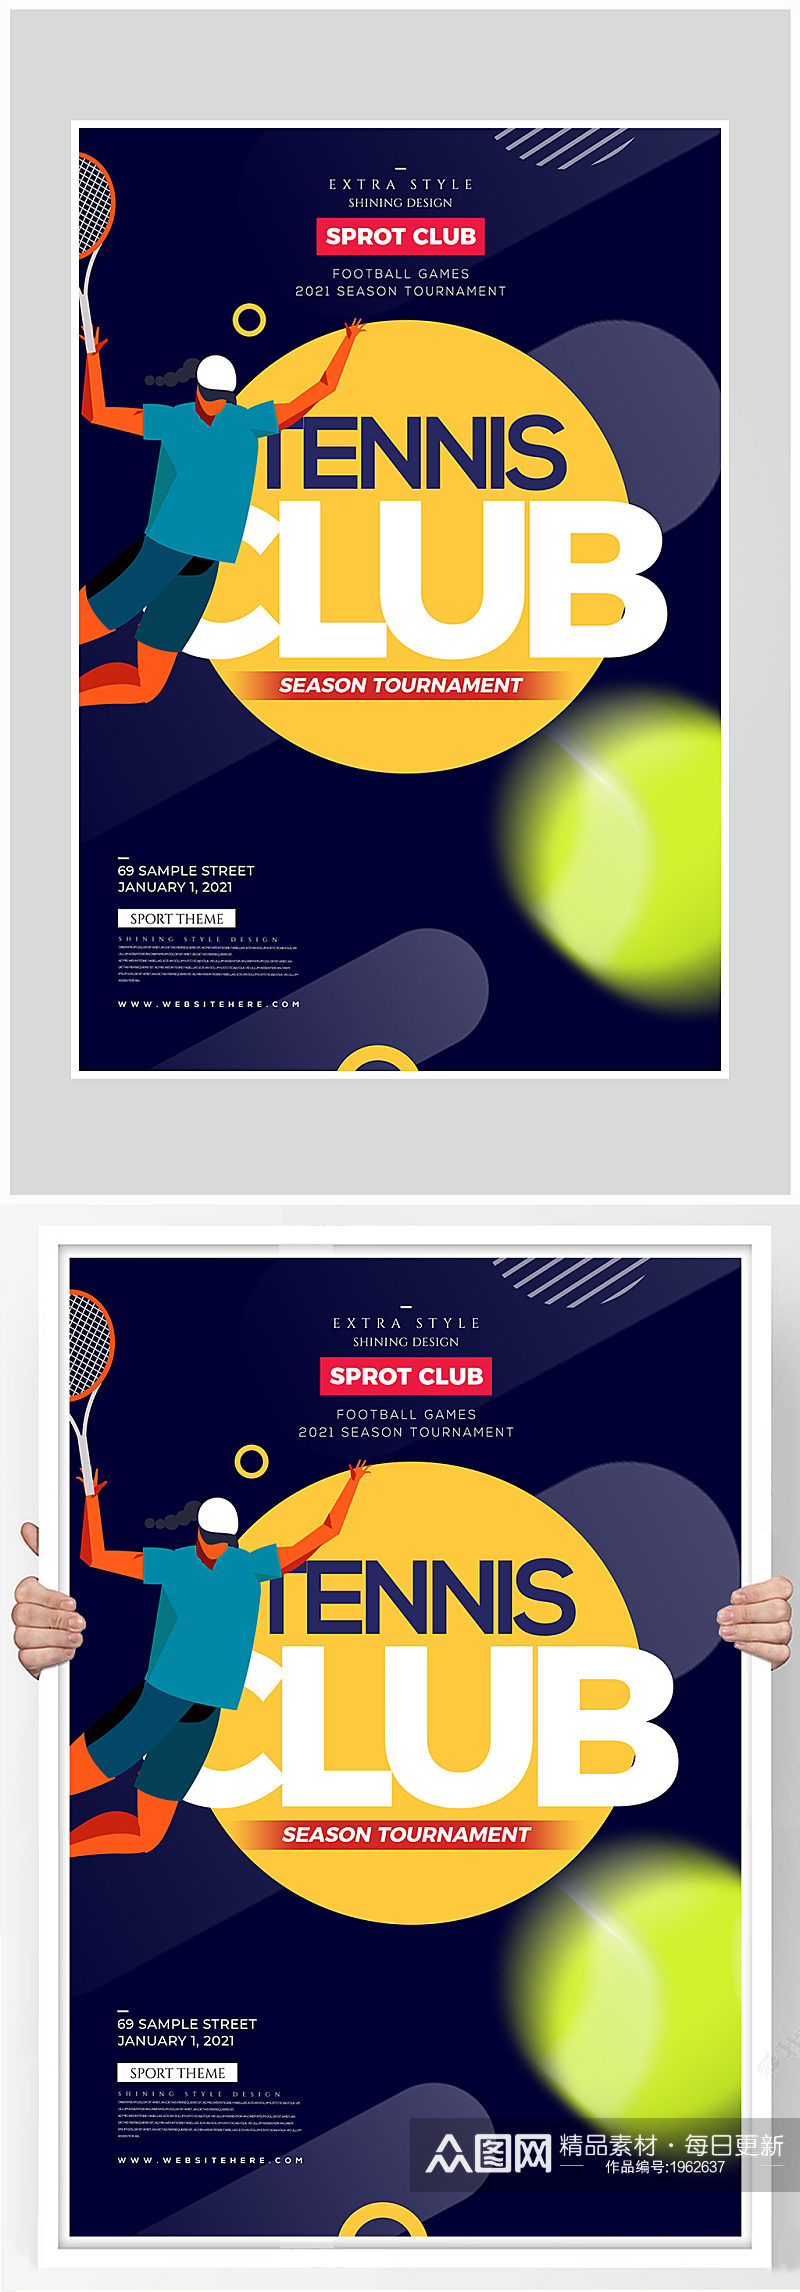 创意质感羽毛球网球海报设计素材